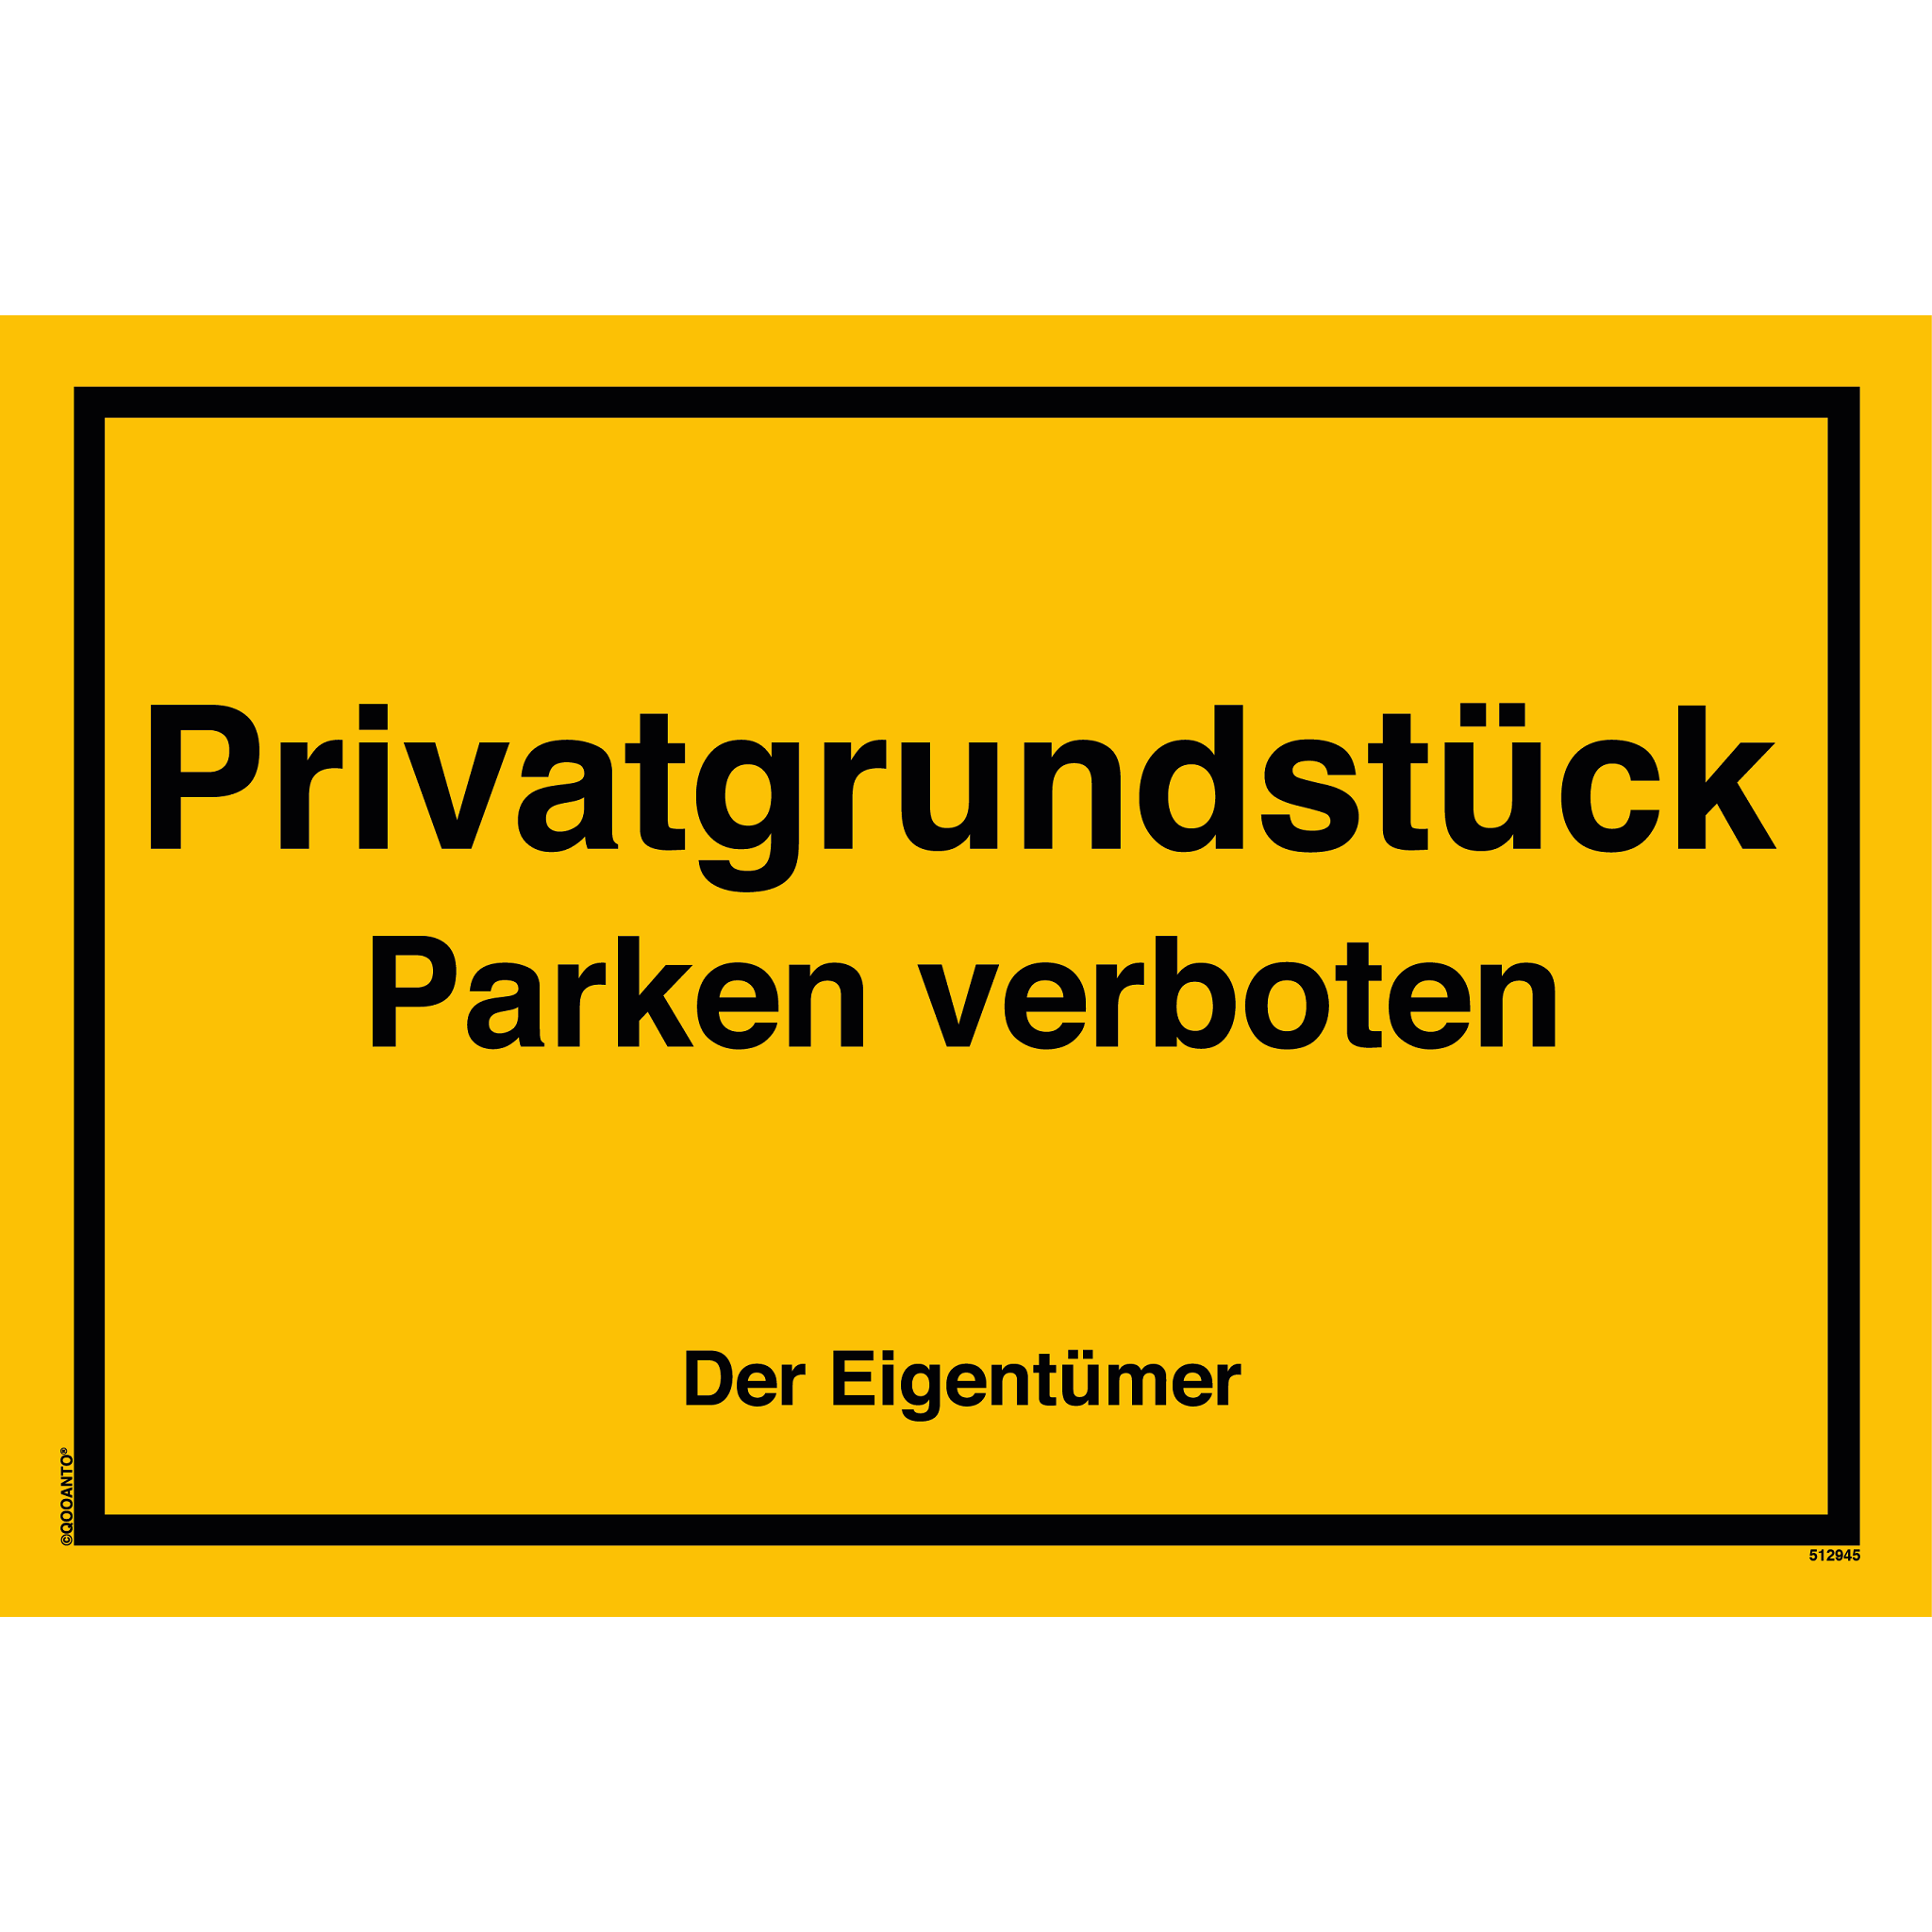 Privatgrundstück Parken verboten Der Eigentümer, gelb, Schild